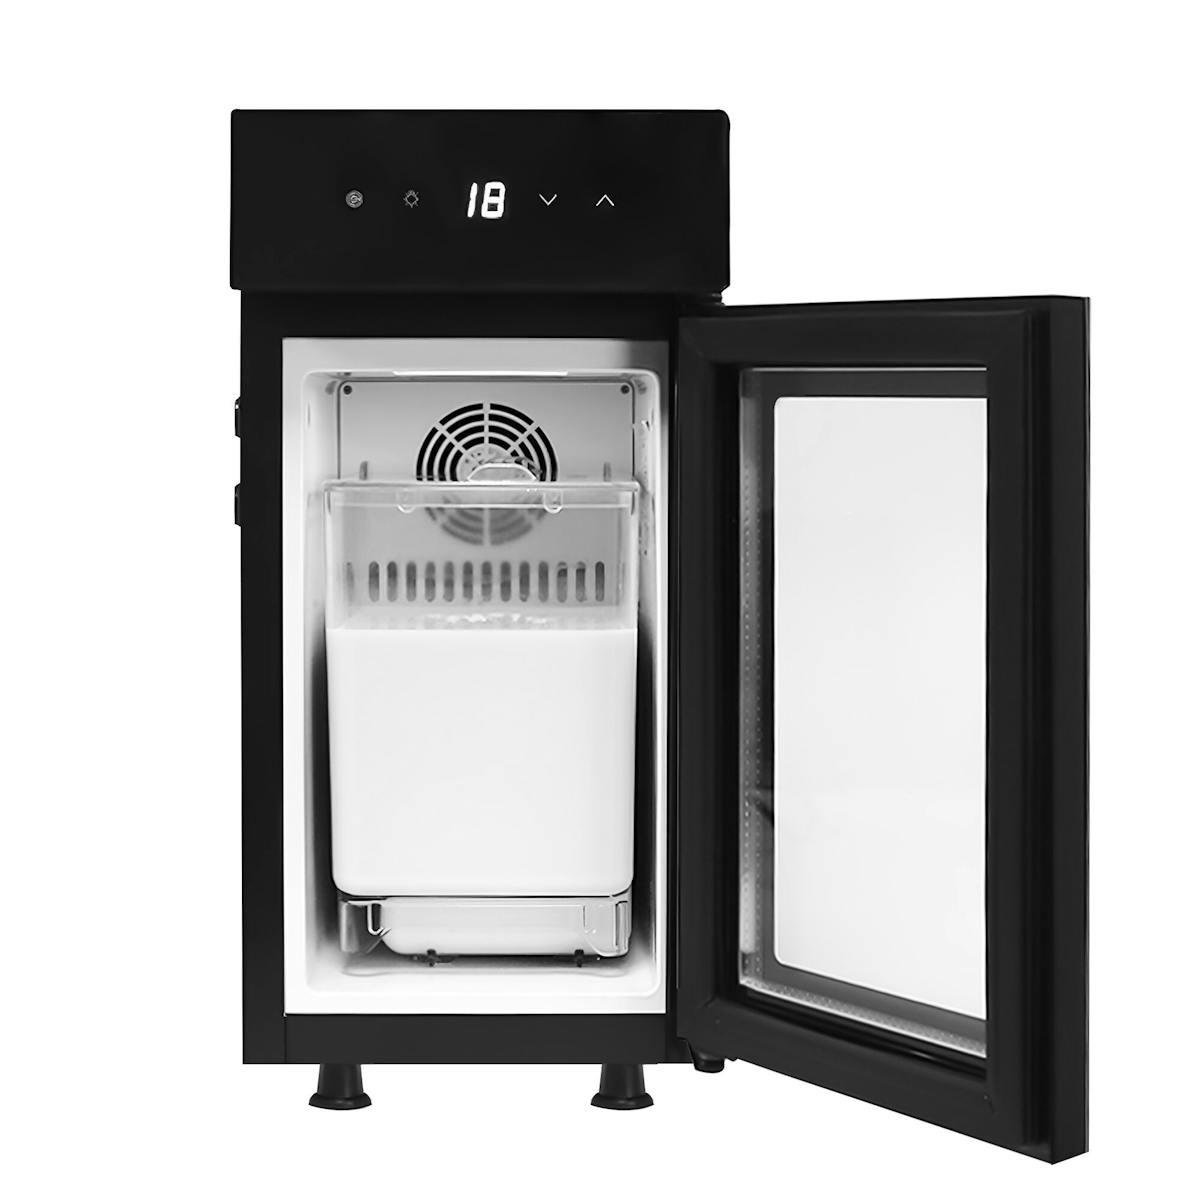 Lednice na mléko se skleněnými dveřmi a displejem vč. digitálního ukazatele teploty